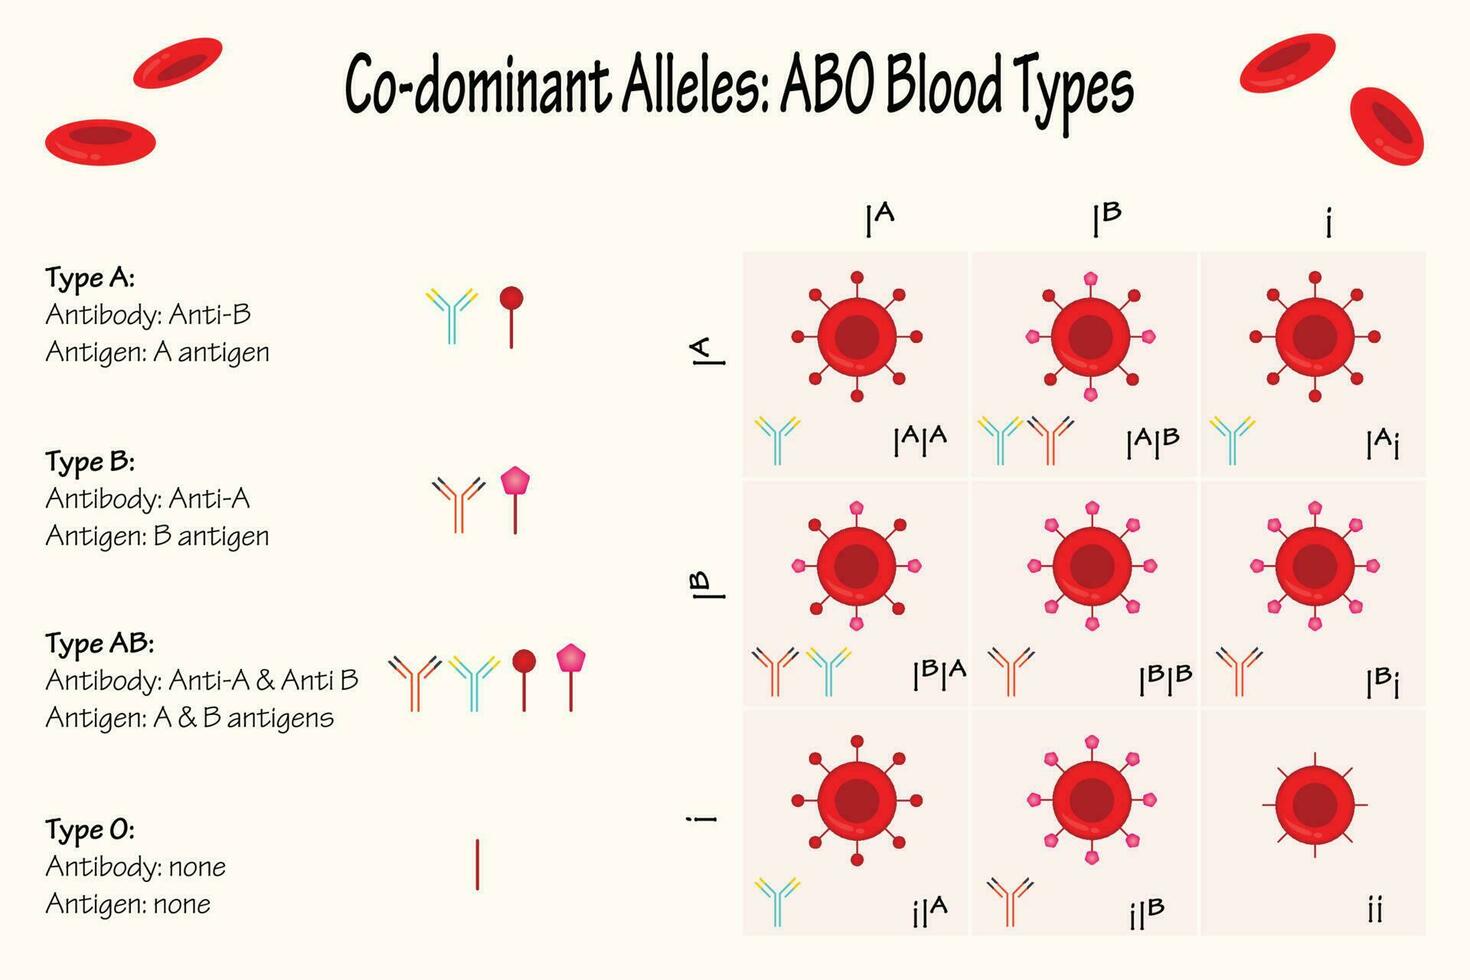 alelos codominantes abo tipos sanguíneos vetor